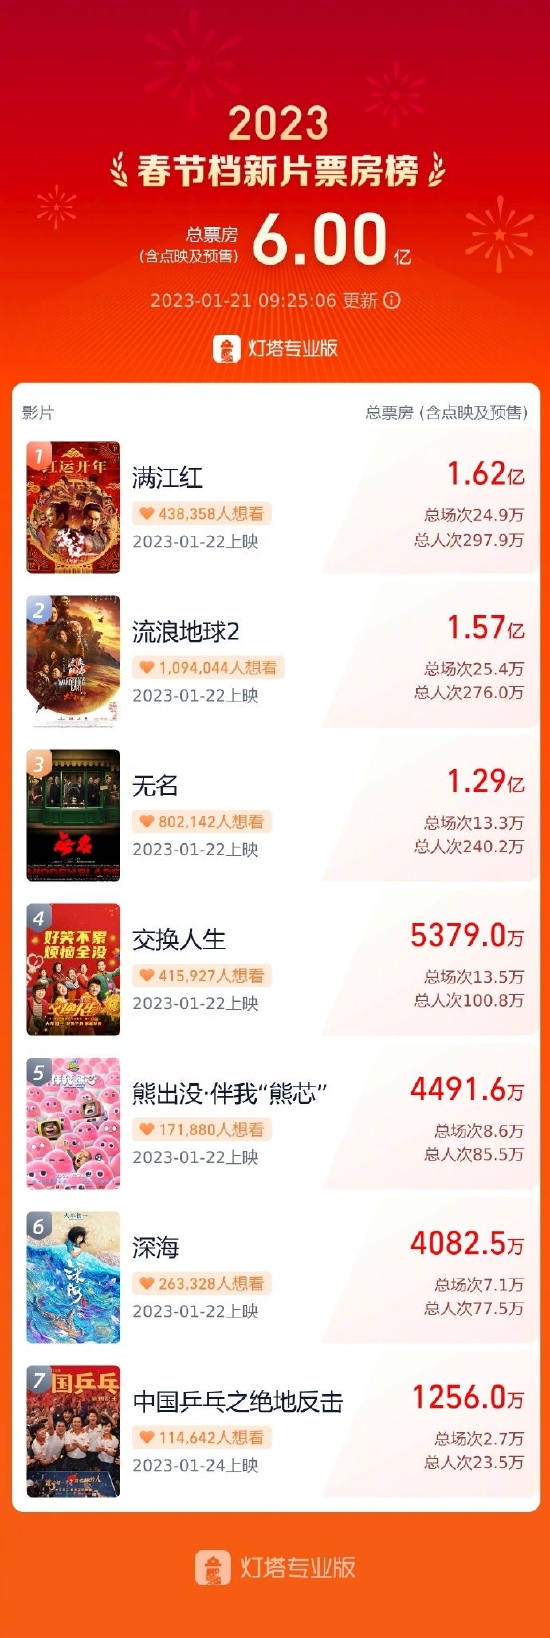 兔年春节档新片预售票房破6亿 《满江红》居榜首